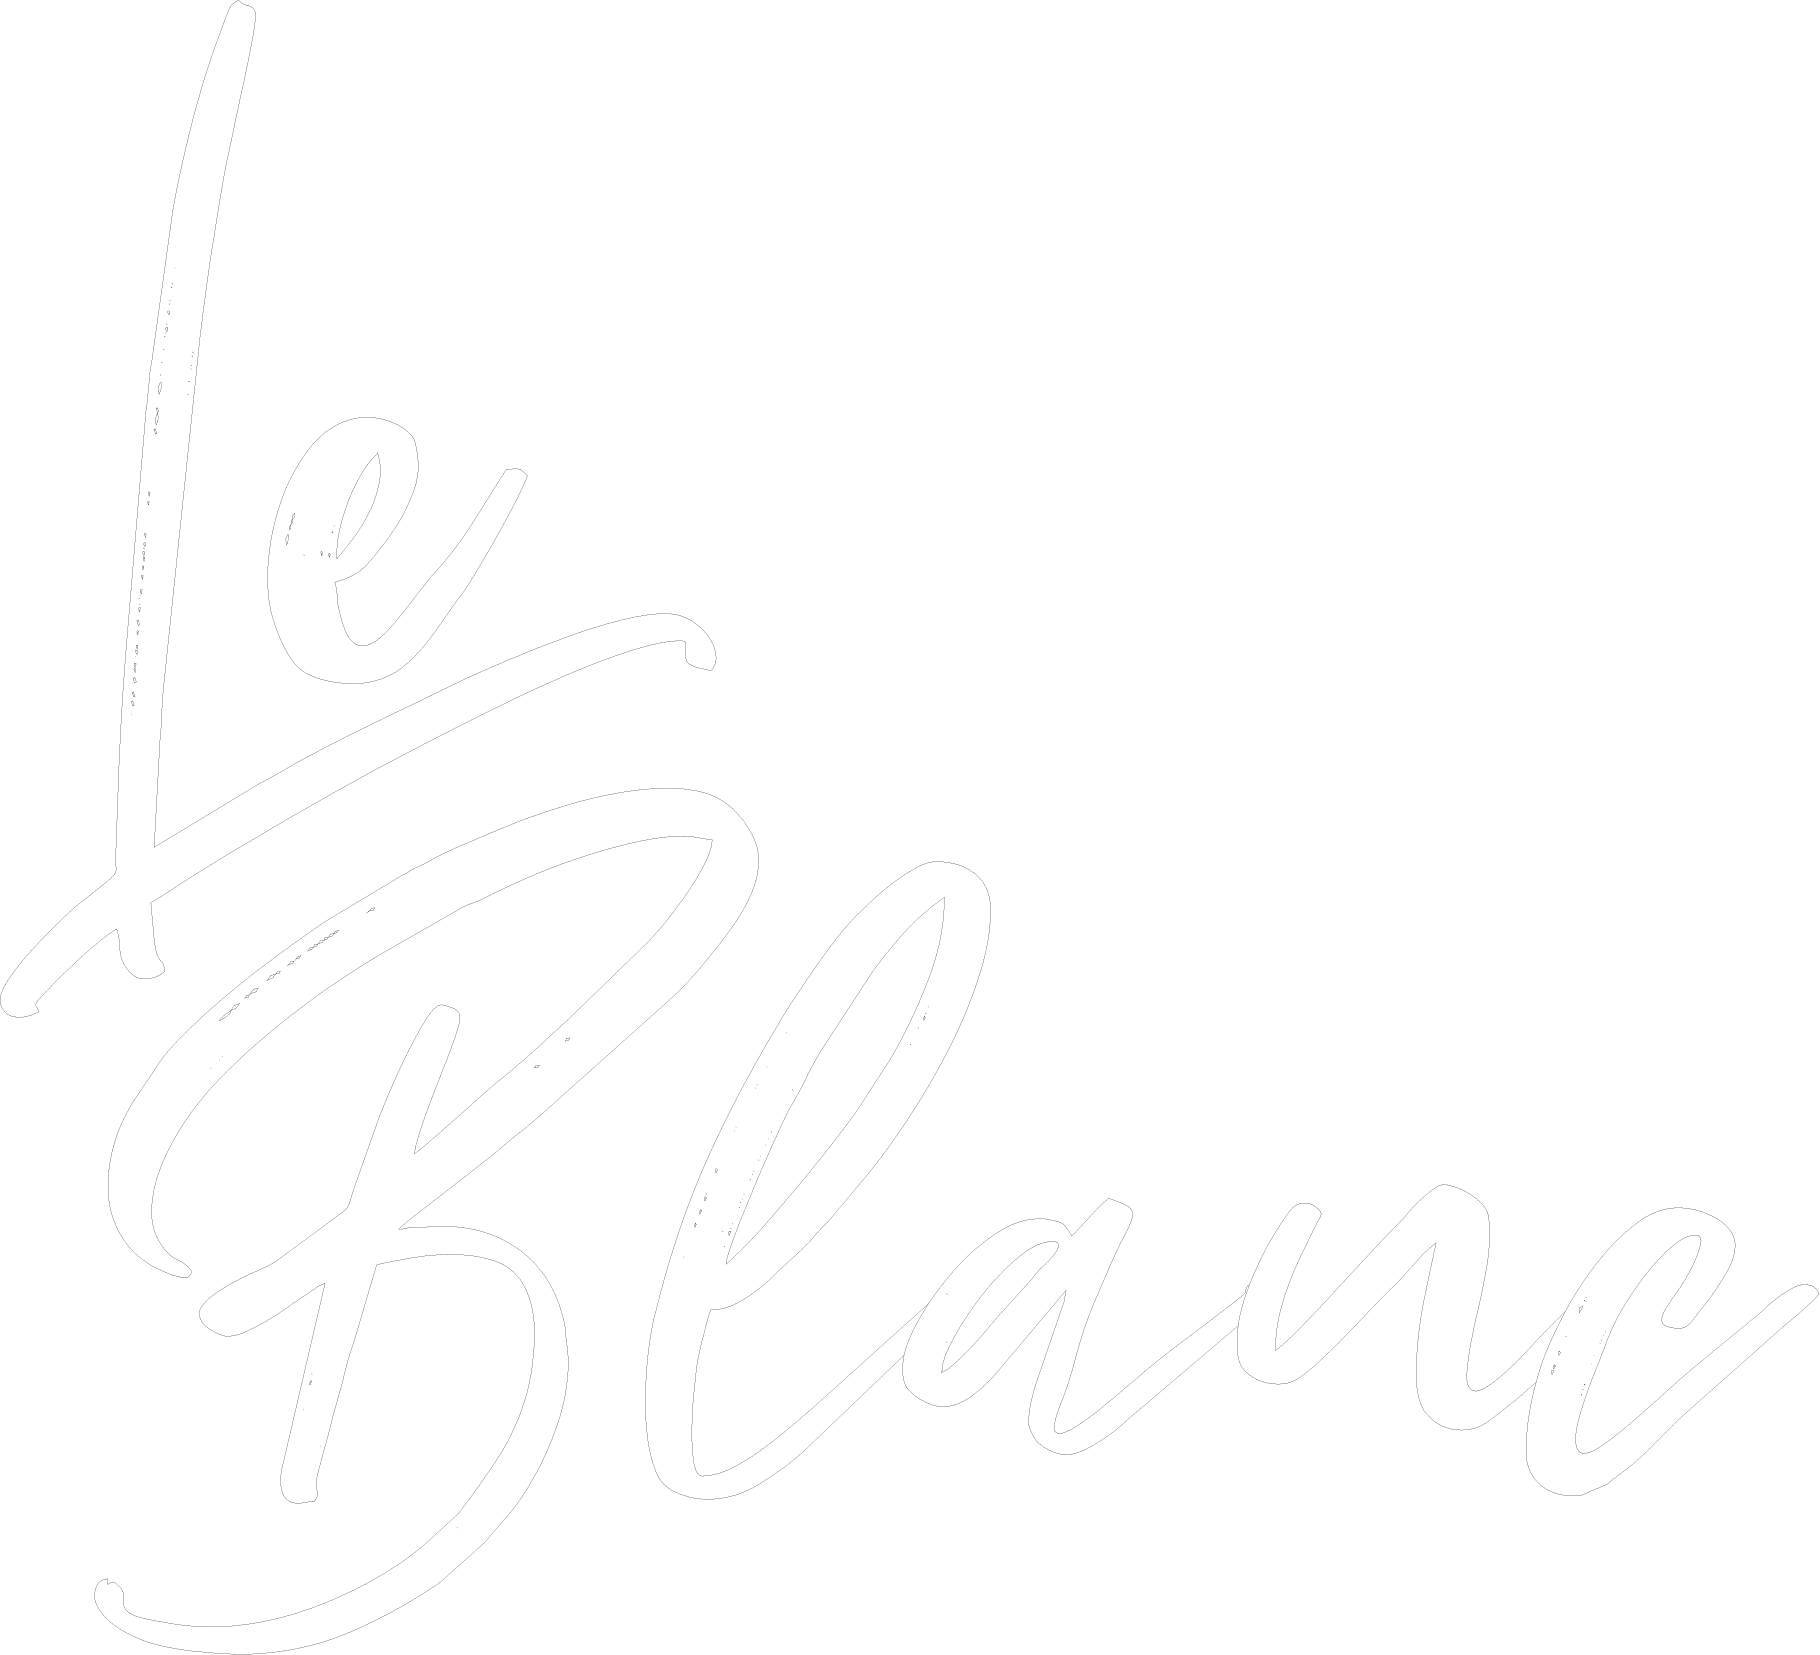 Le Blanc Sunglasses LLC